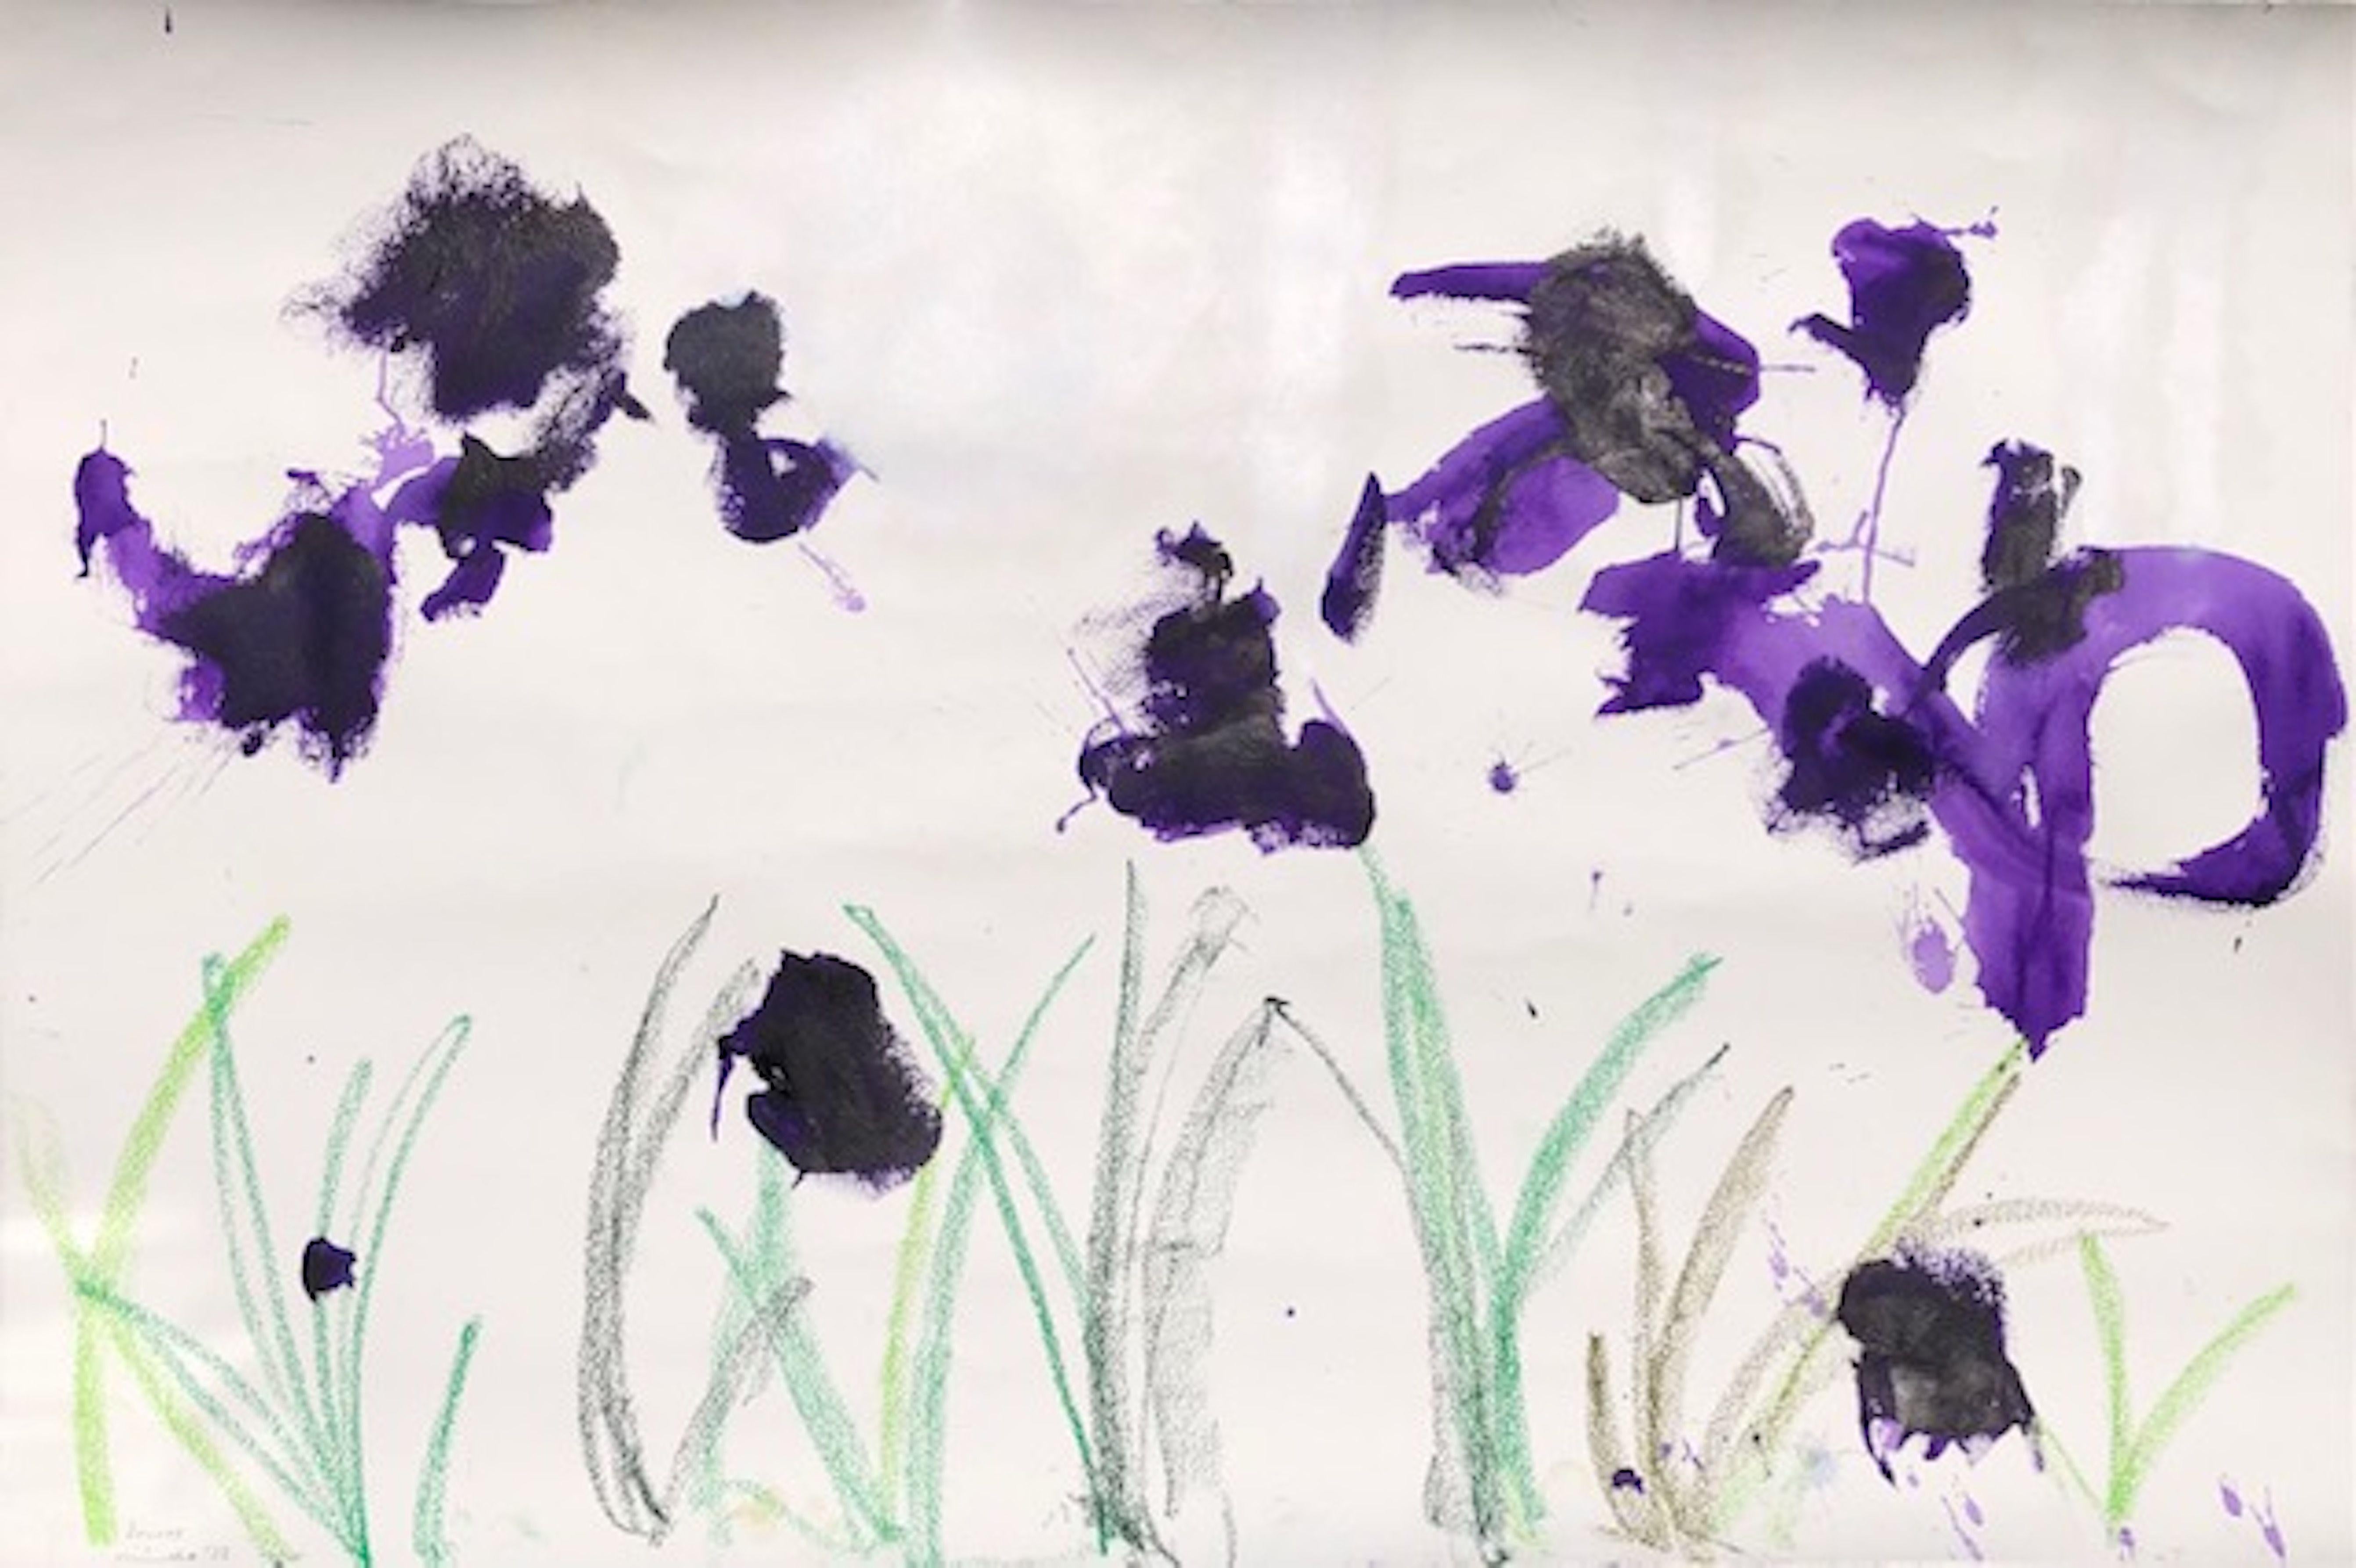 Irises, Mixed Media on Paper - Mixed Media Art by Mineko Yoshida